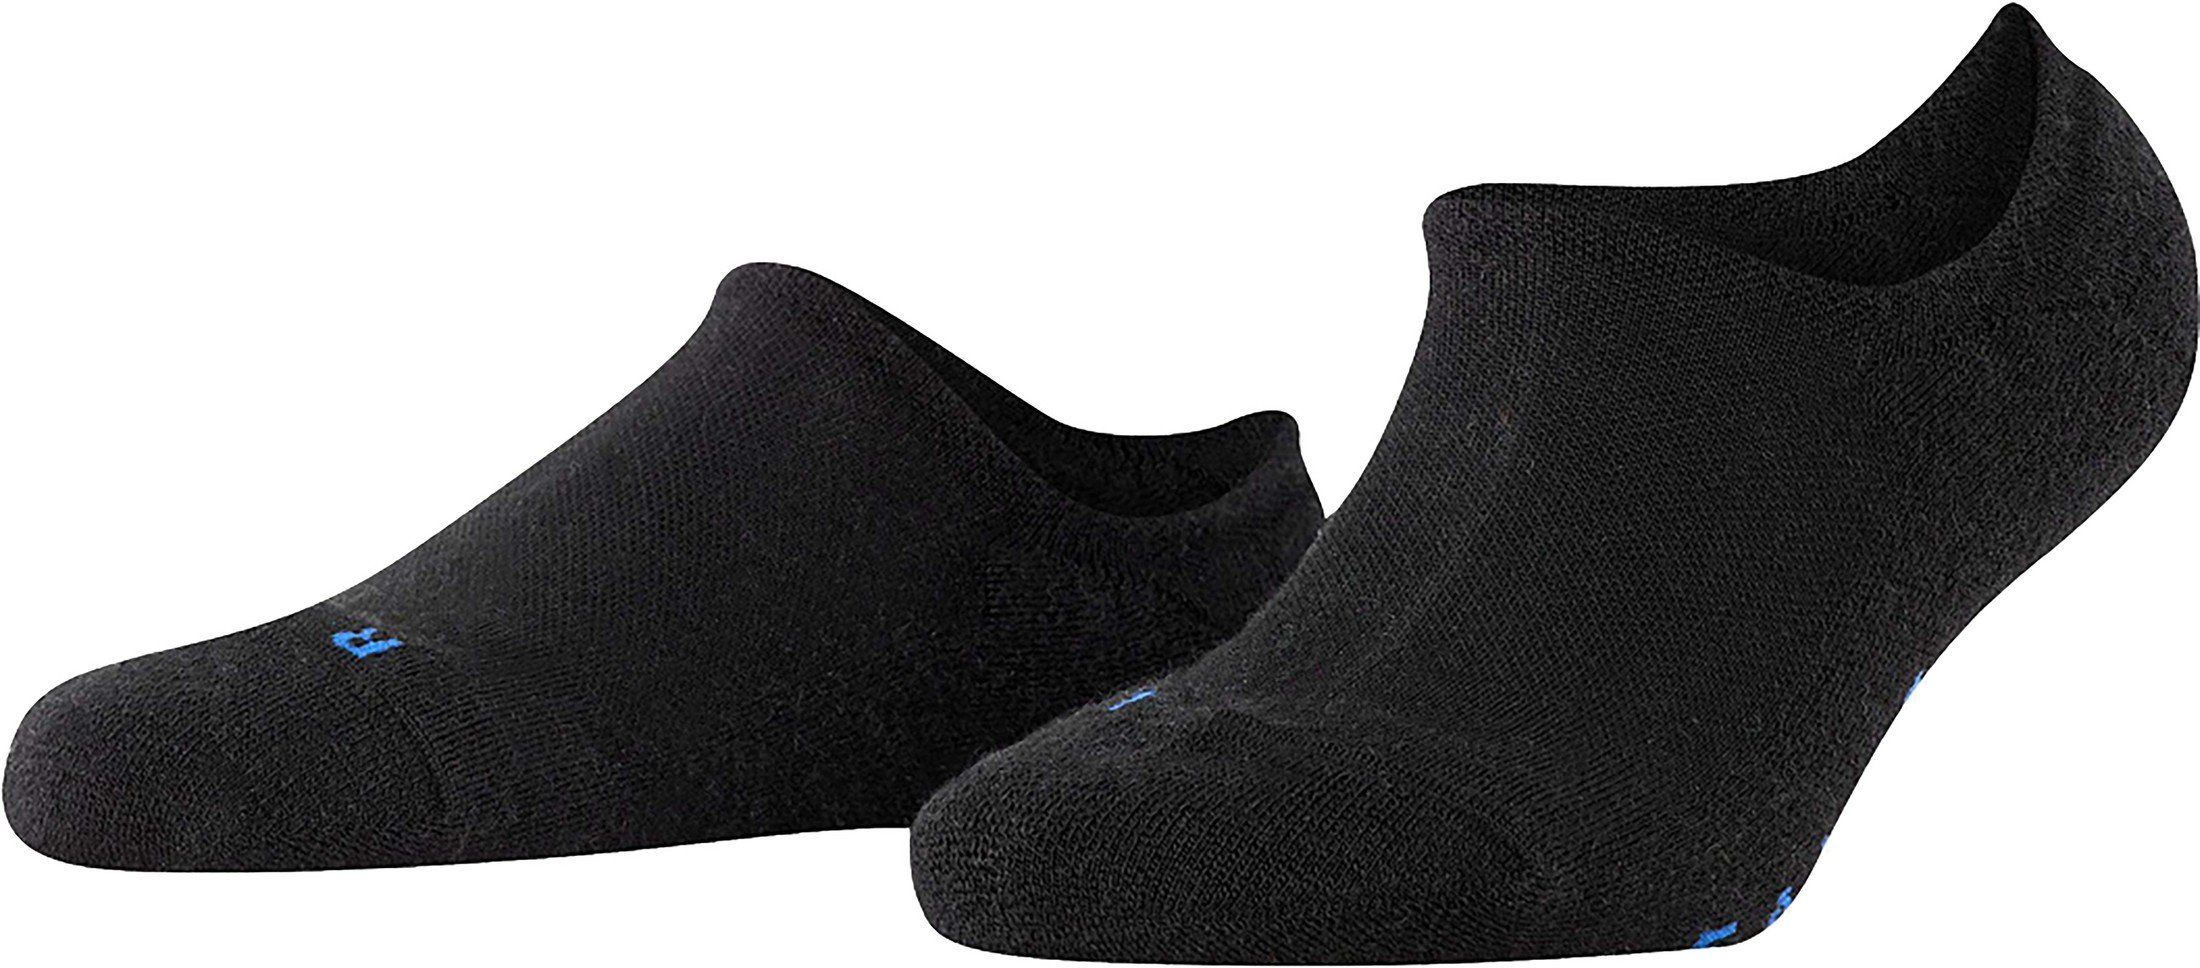 Falke Keep Warm Sneaker Sok Black size 39-41